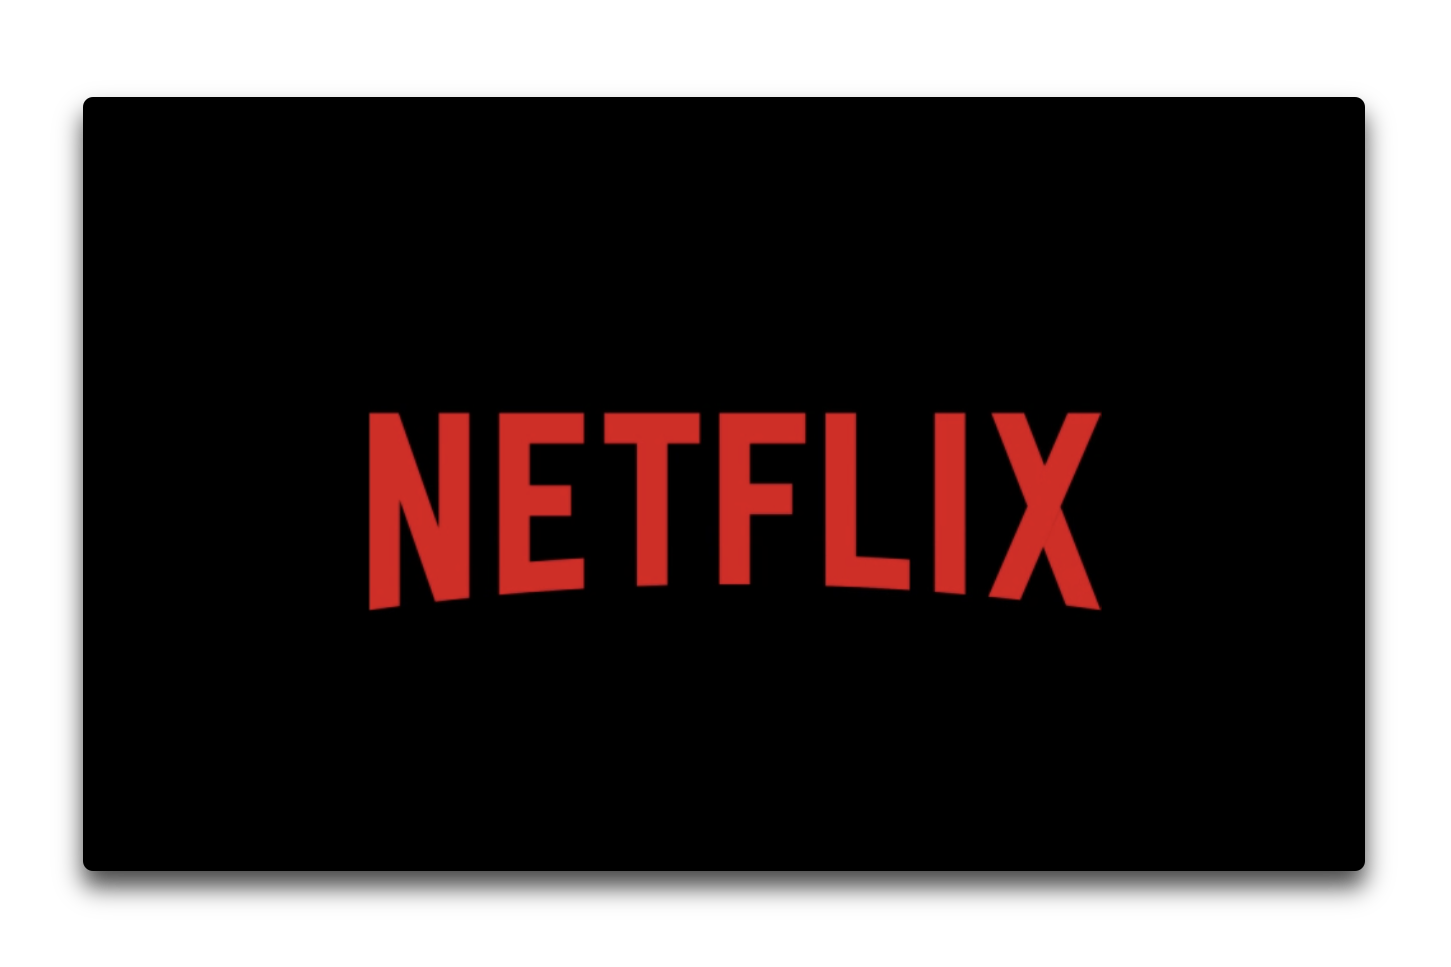 Netflixは、Appleの新しいビデオサービスには参加しない